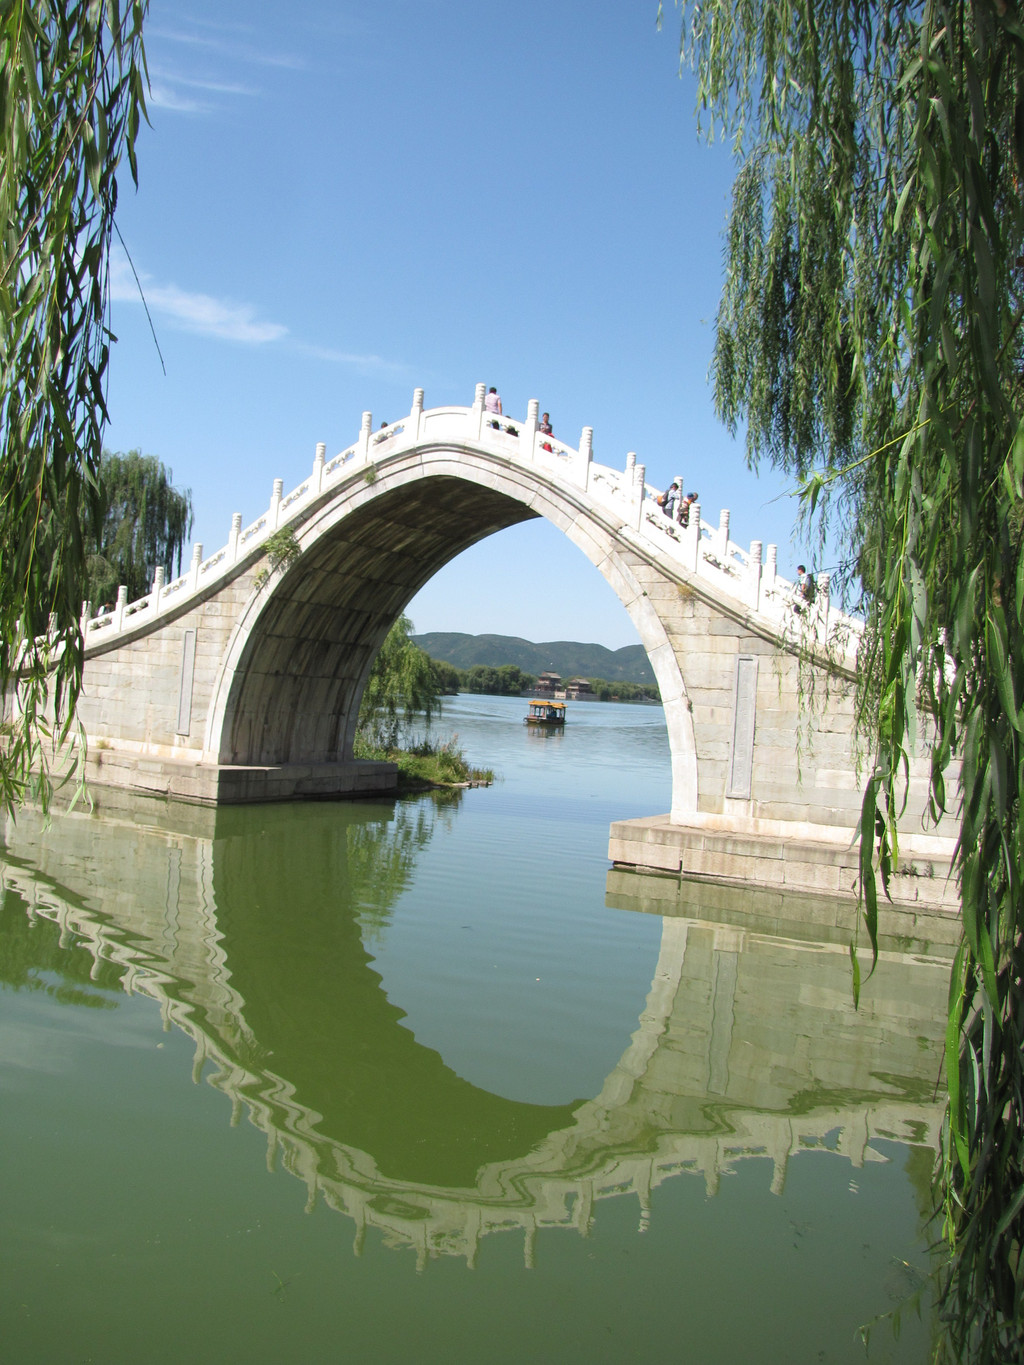 【携程攻略】十七孔桥门票,北京十七孔桥攻略/地址/图片/门票价格